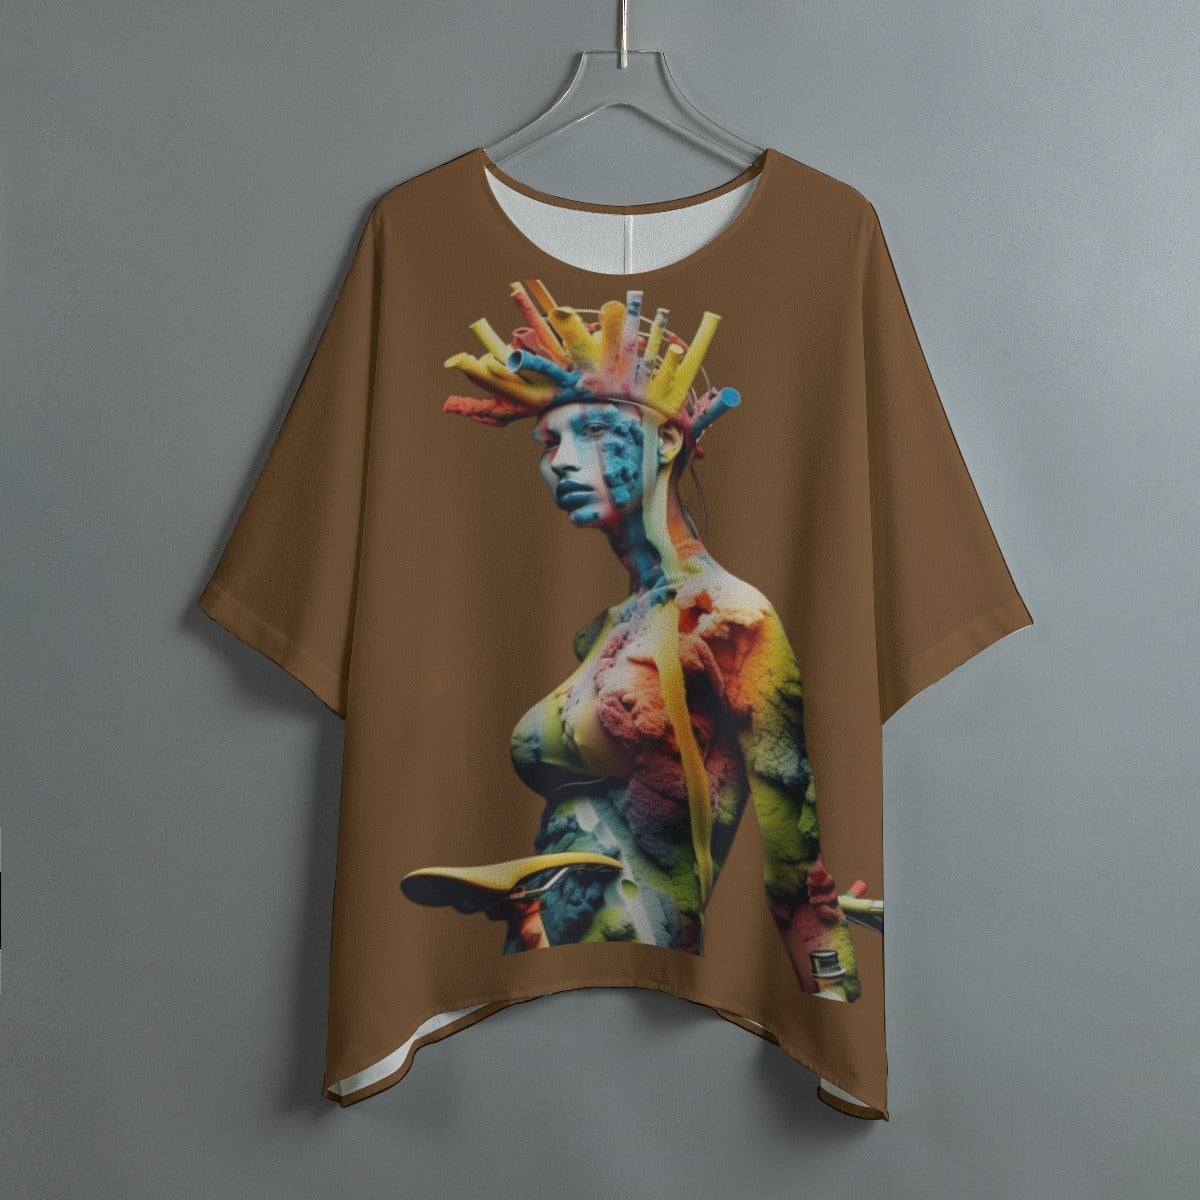 All-Over Print Women's Bat Sleeve Shirt